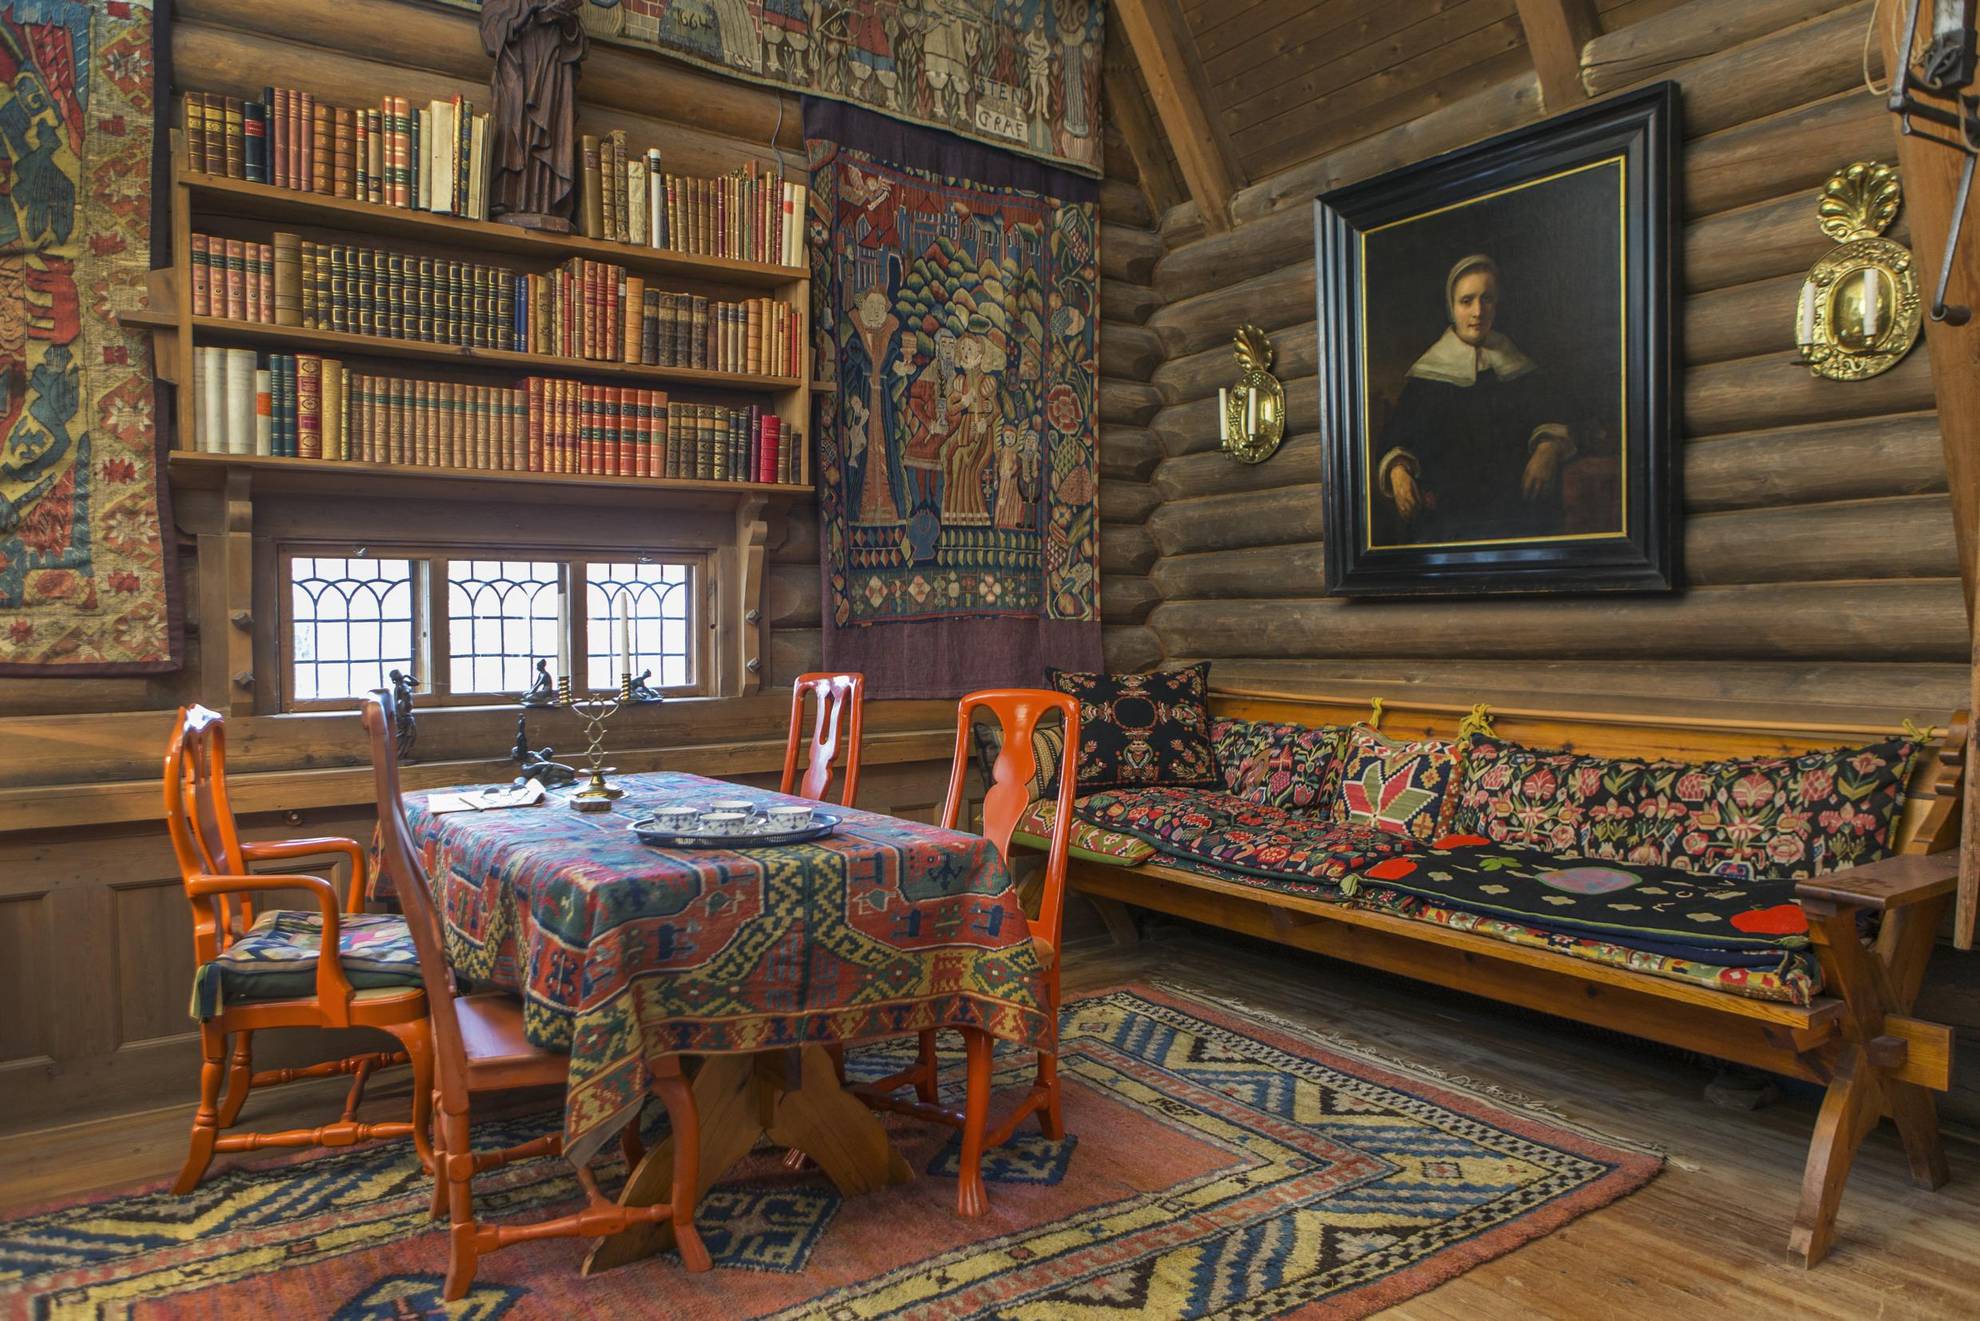 De kleurrijke eetzaal van Anders Zorn, met geweven wandtapijten, knalrode stoelen rond een tafel met een geweven doek, een boekenplank en een houten bank.